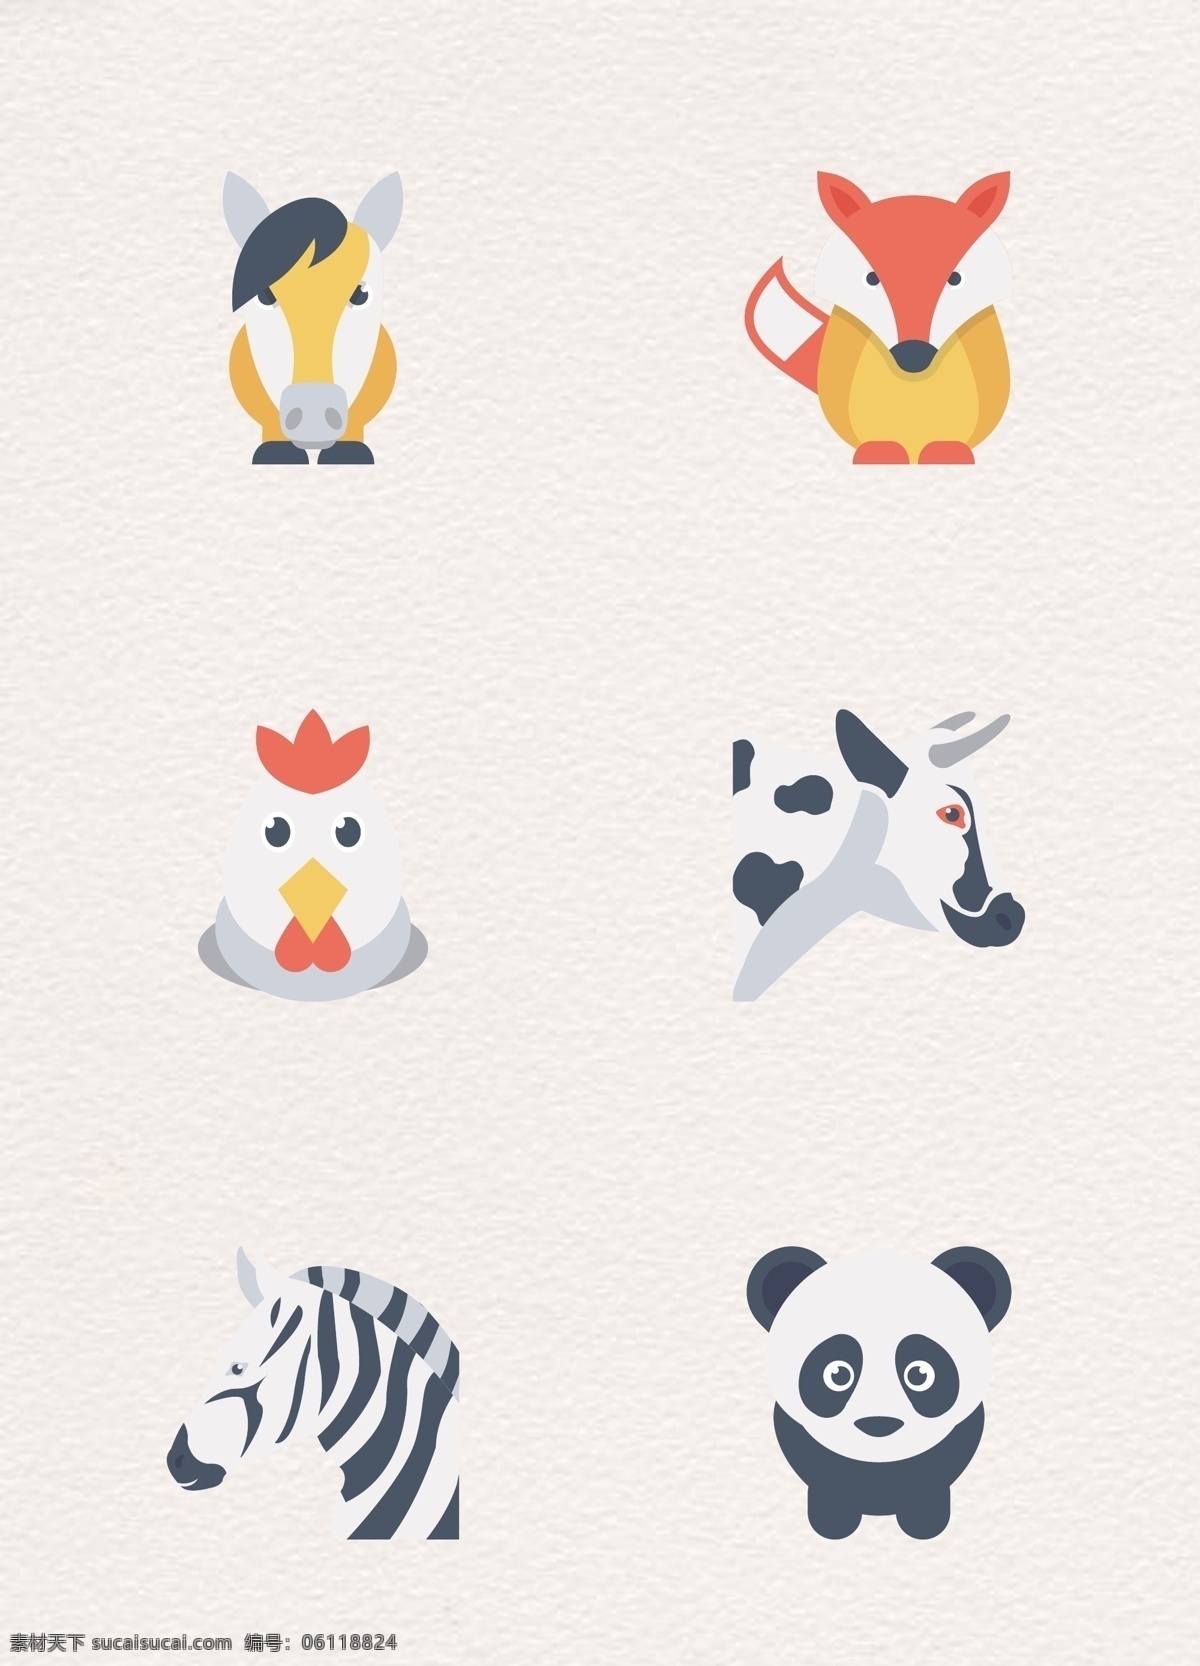 创意 组 动物 图标 卡通 彩色 斑马 熊猫 动物图标 矢量设计 炉头 狐狸 小鸭